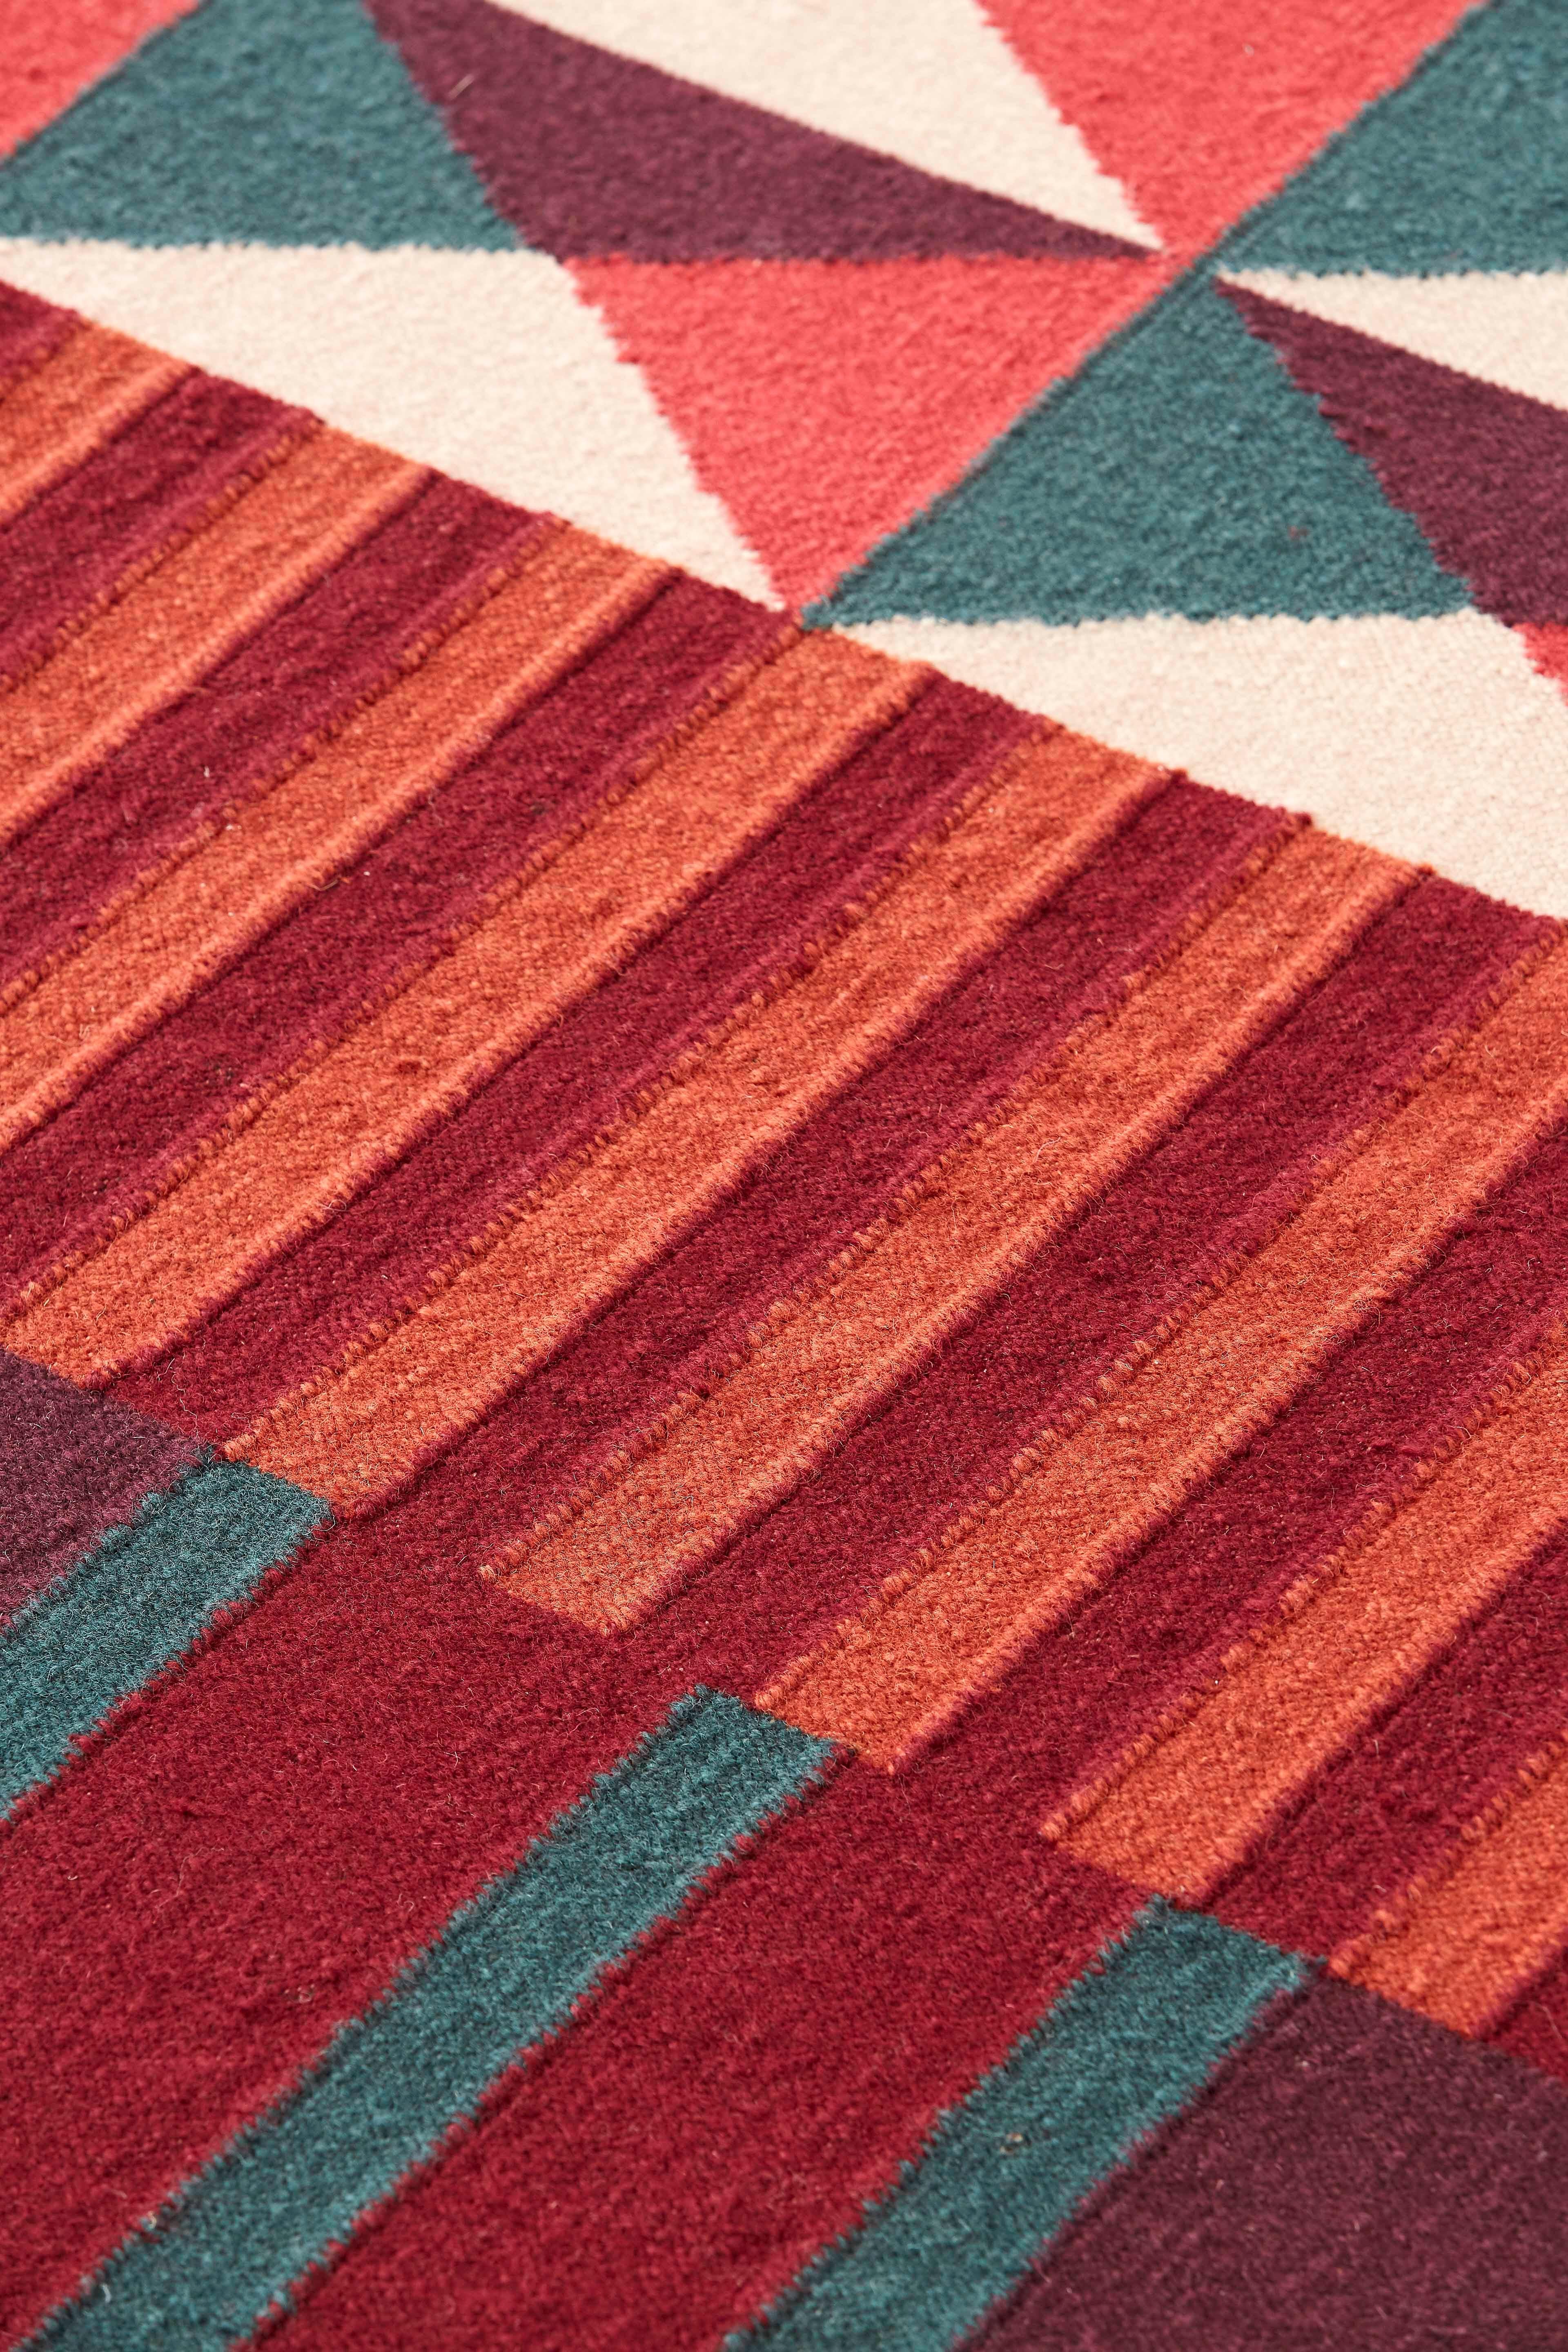 Die Ndebele-Teppiche sind von der Kultur des afrikanischen Ndebele-Volkes inspiriert, das für seine bunten Fassaden bekannt ist. Diese werden traditionell von Frauen gemalt, die ihre Häuser mit Wandmalereien mit geometrischen Motiven und leuchtenden